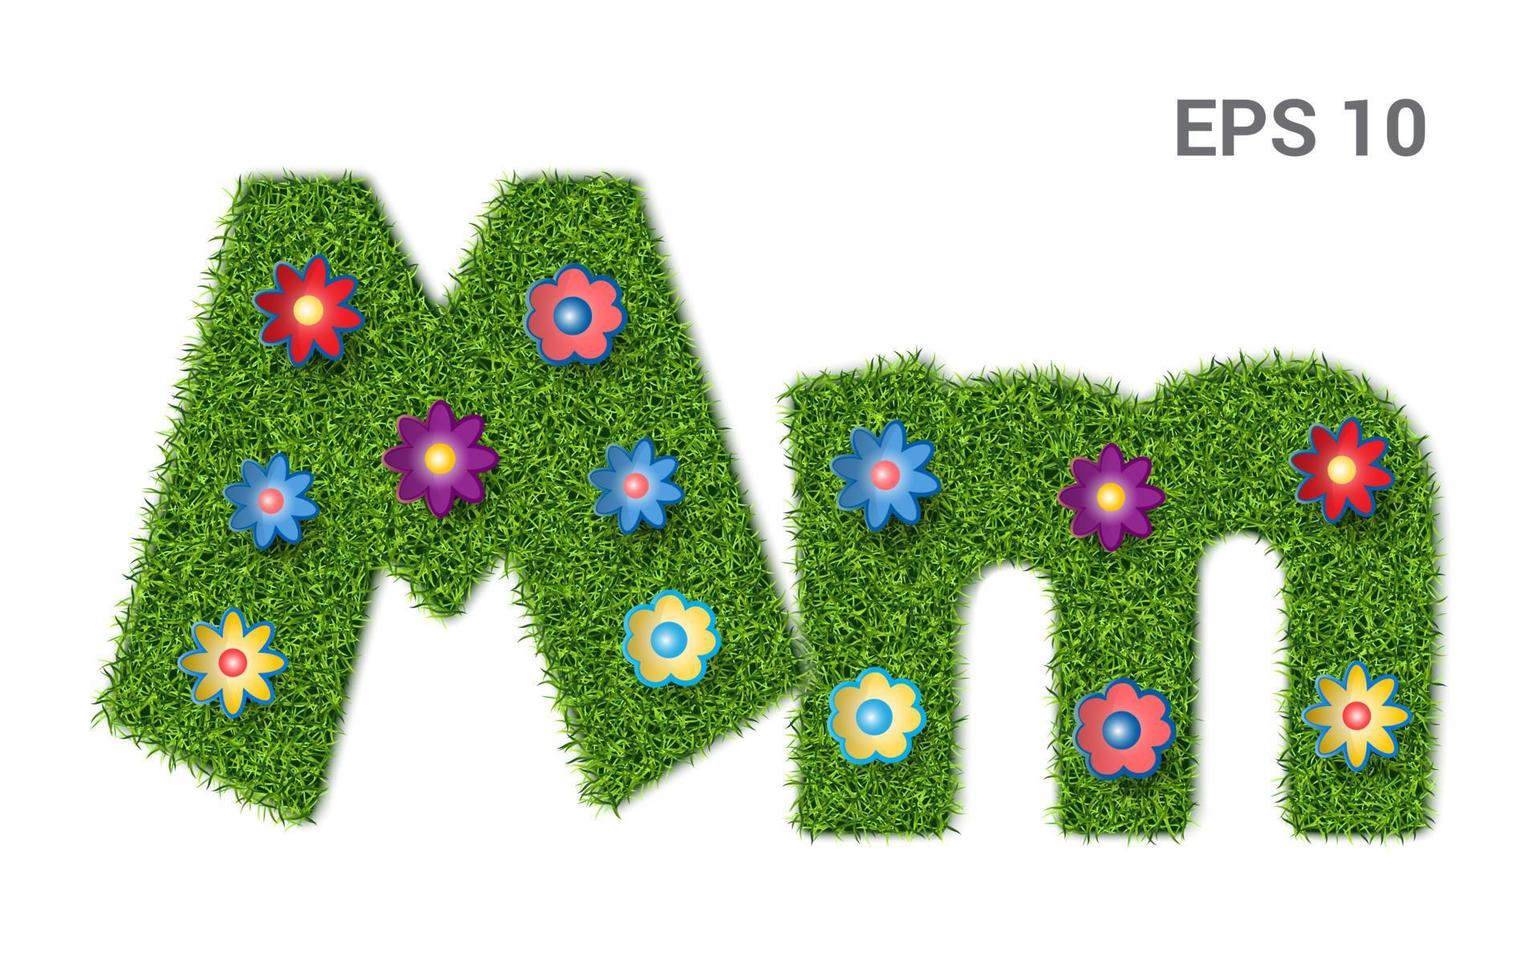 mm - hoofdletters en hoofdletters van het alfabet met een textuur van gras. Moors gazon met bloemen. geïsoleerd op een witte achtergrond. vector illustratie